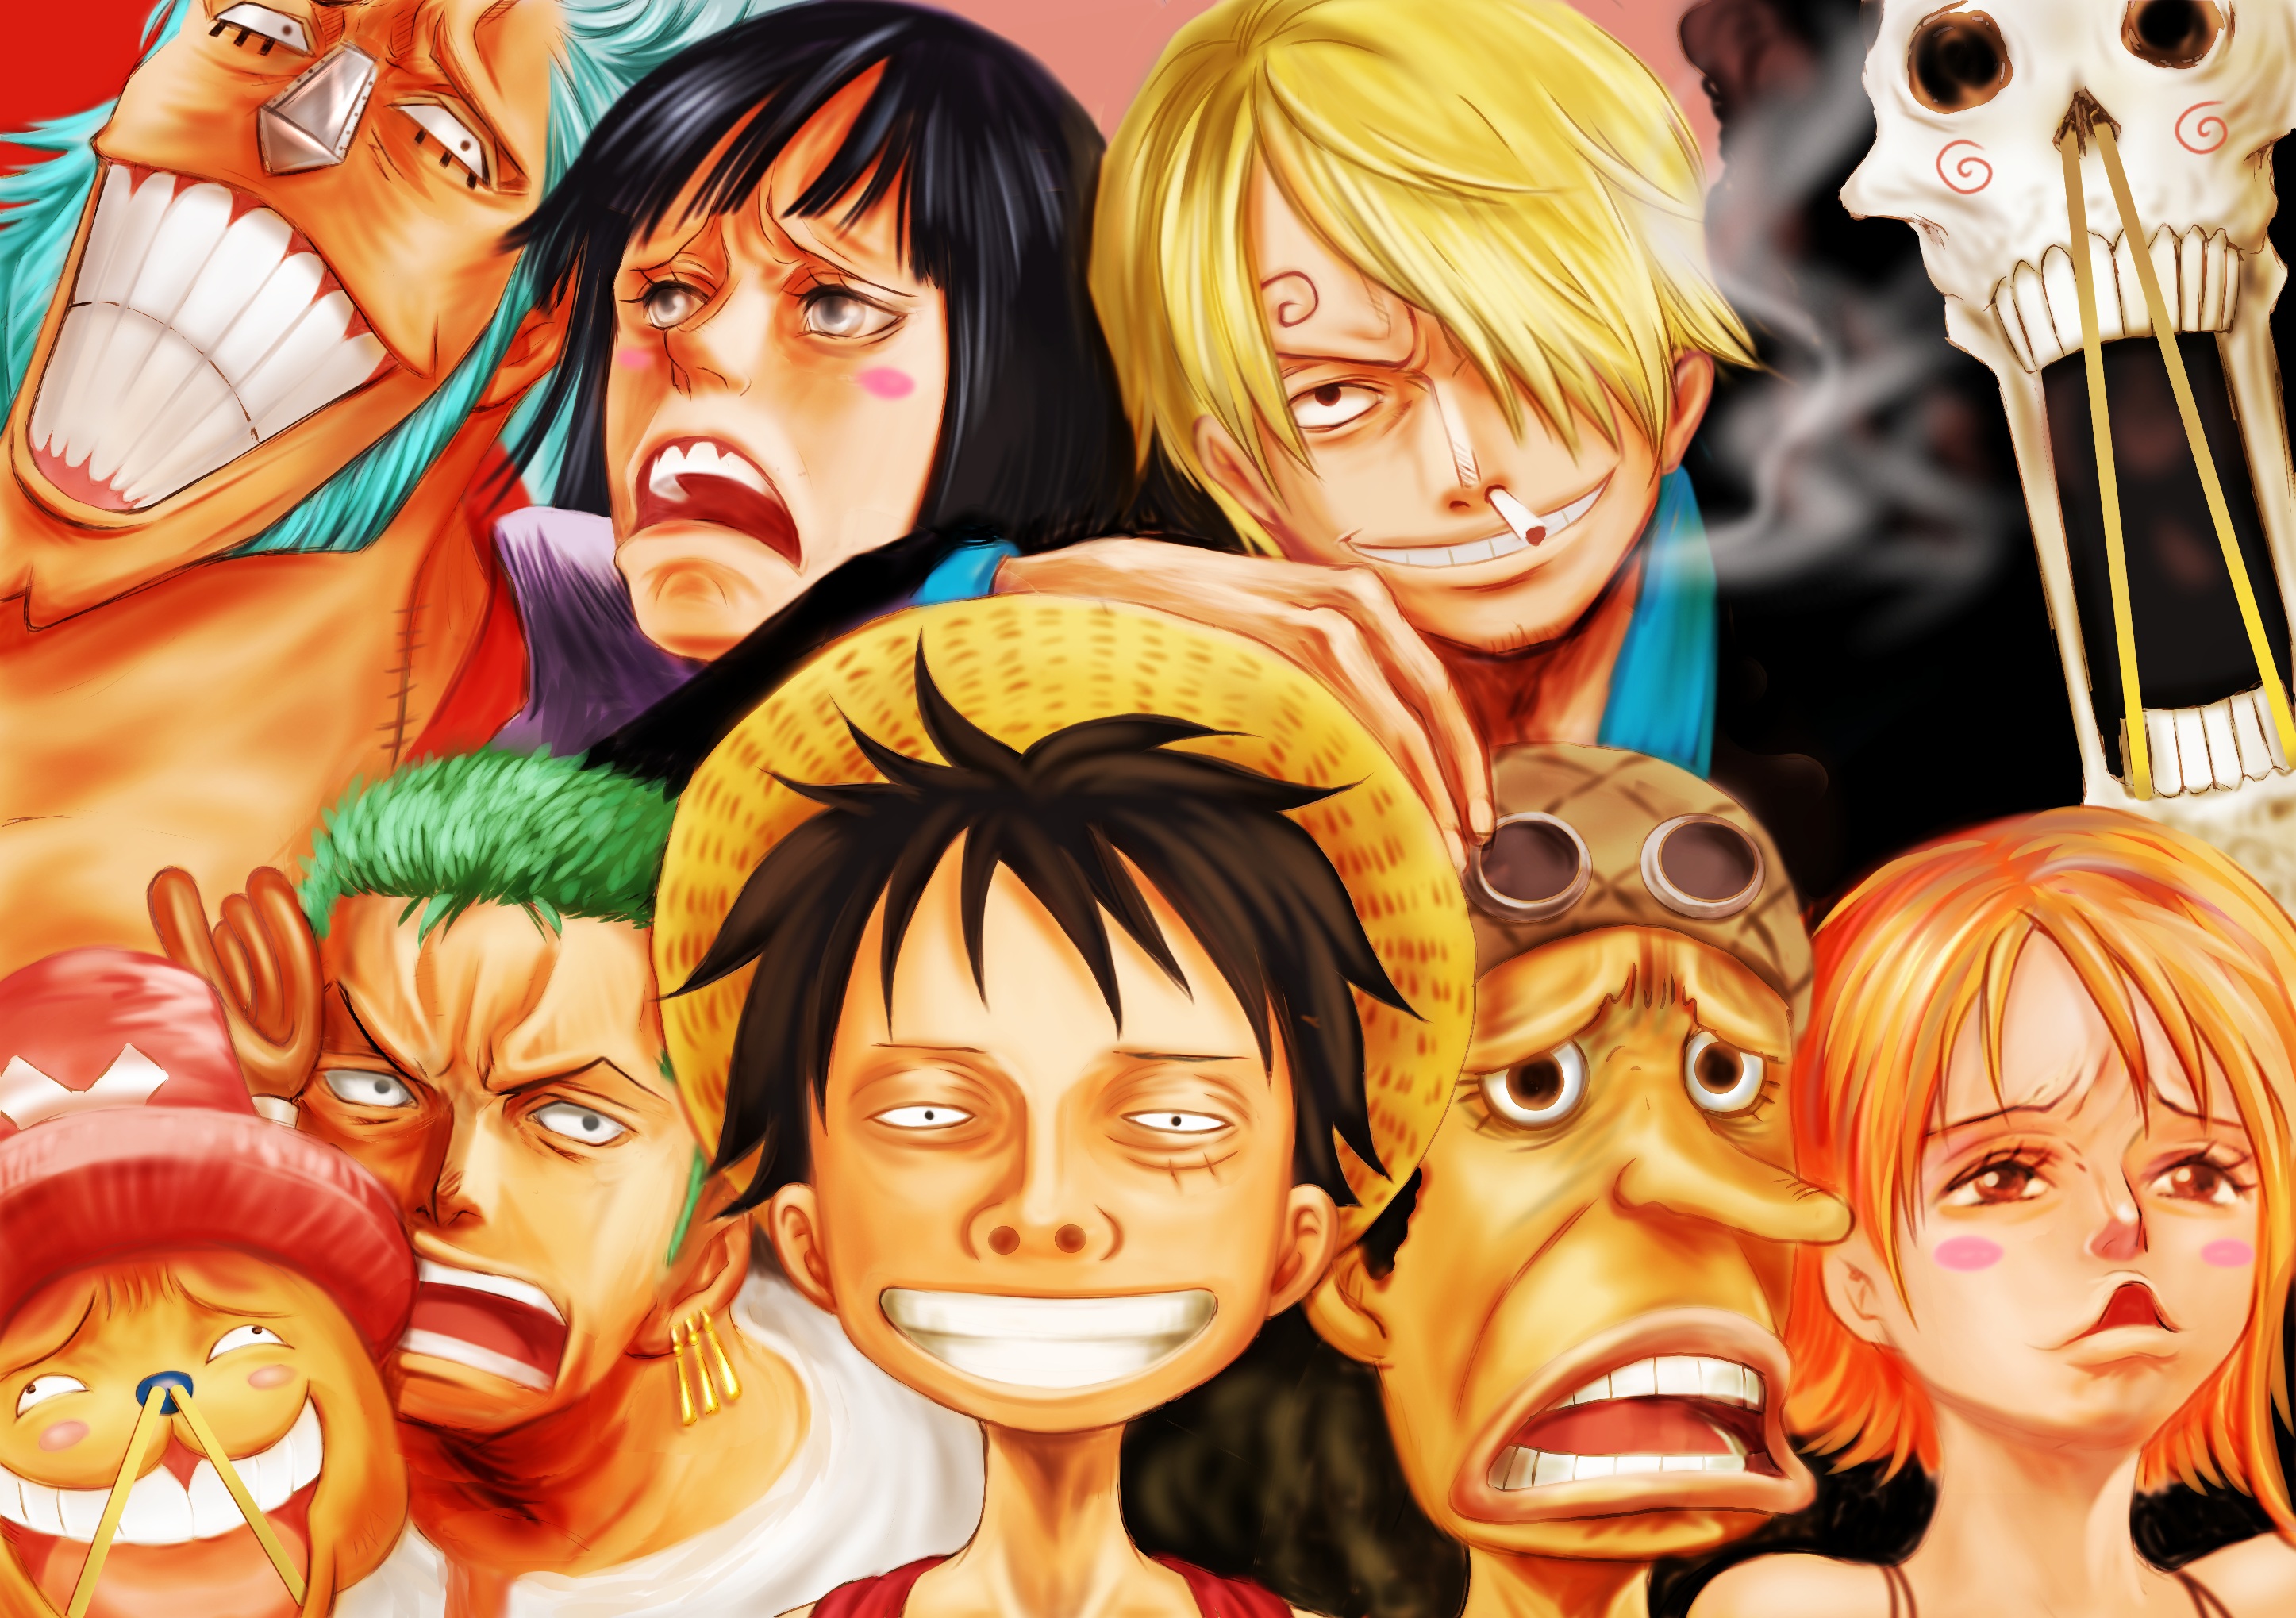 O Tama One Piece Fondos De Pantalla Hd Y Fondos De Escritorio | Hot Sex ...